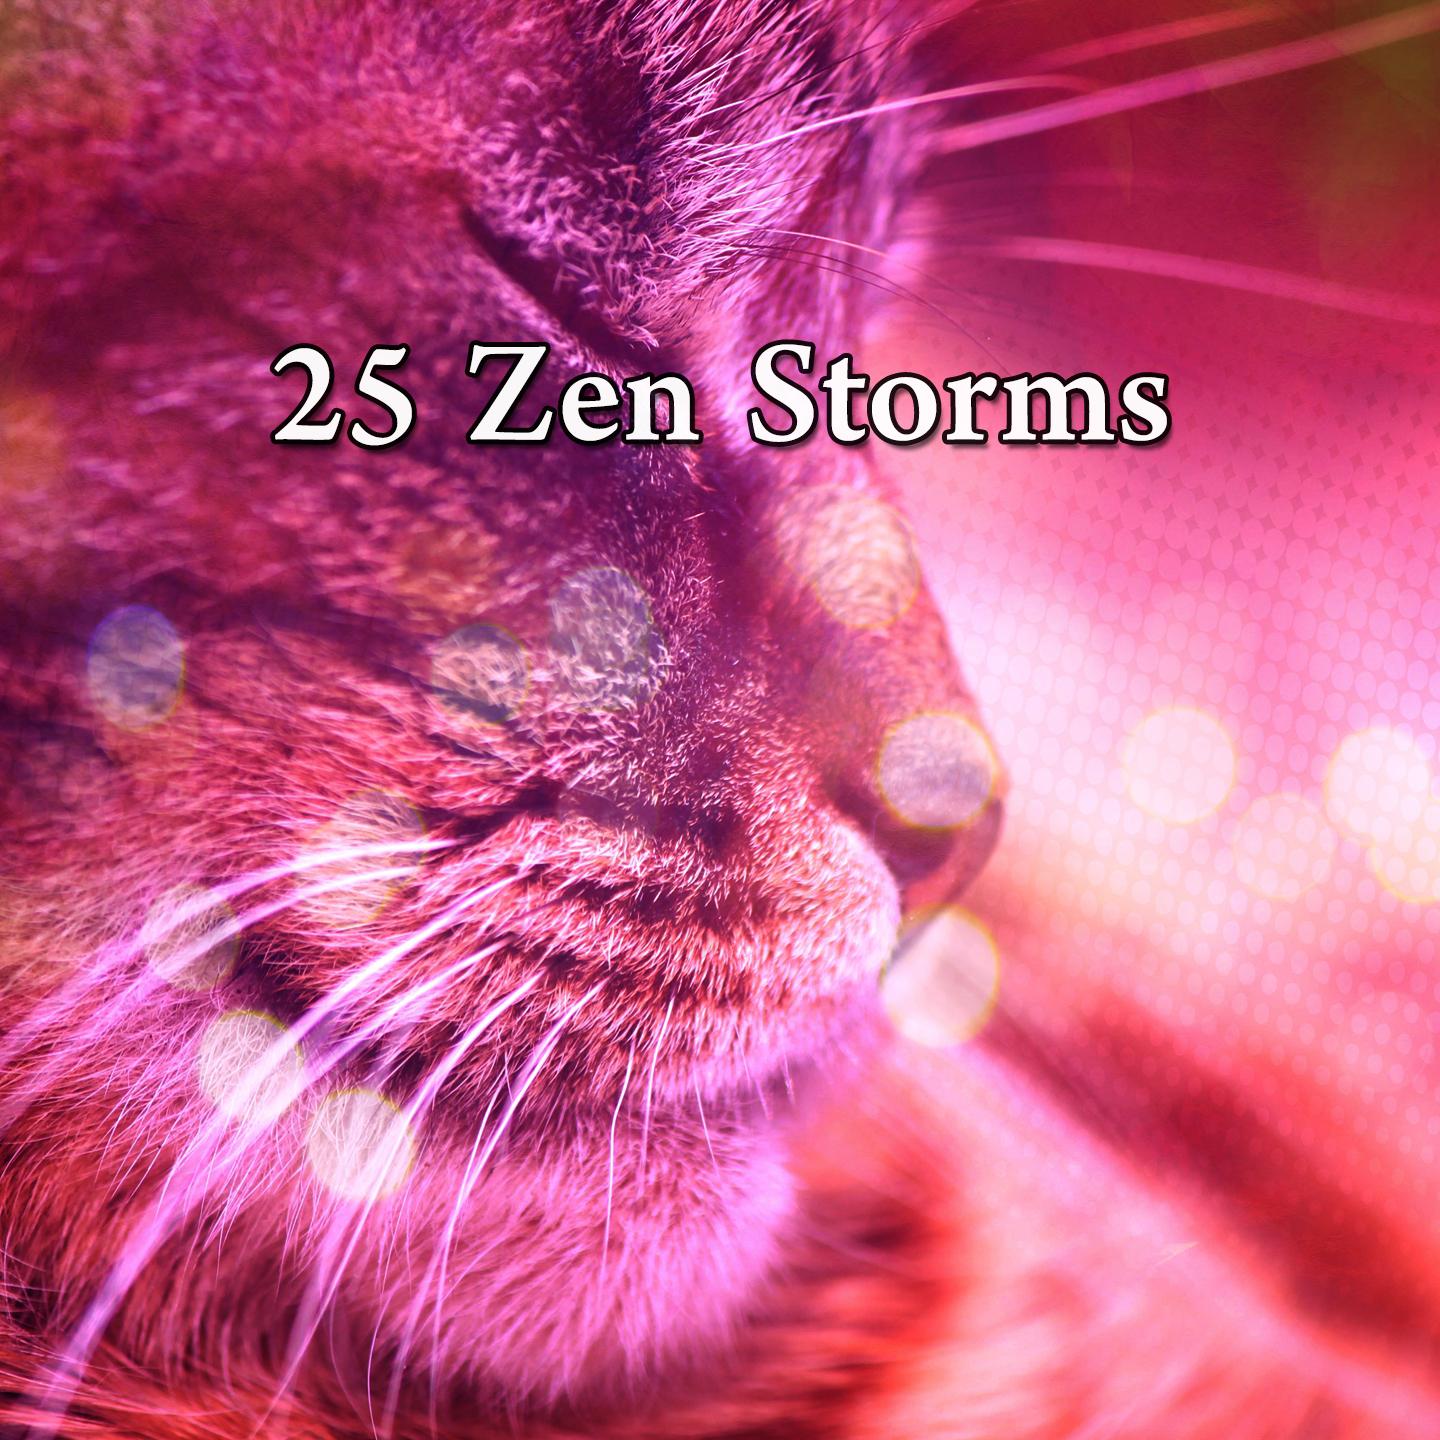 25 Zen Storms